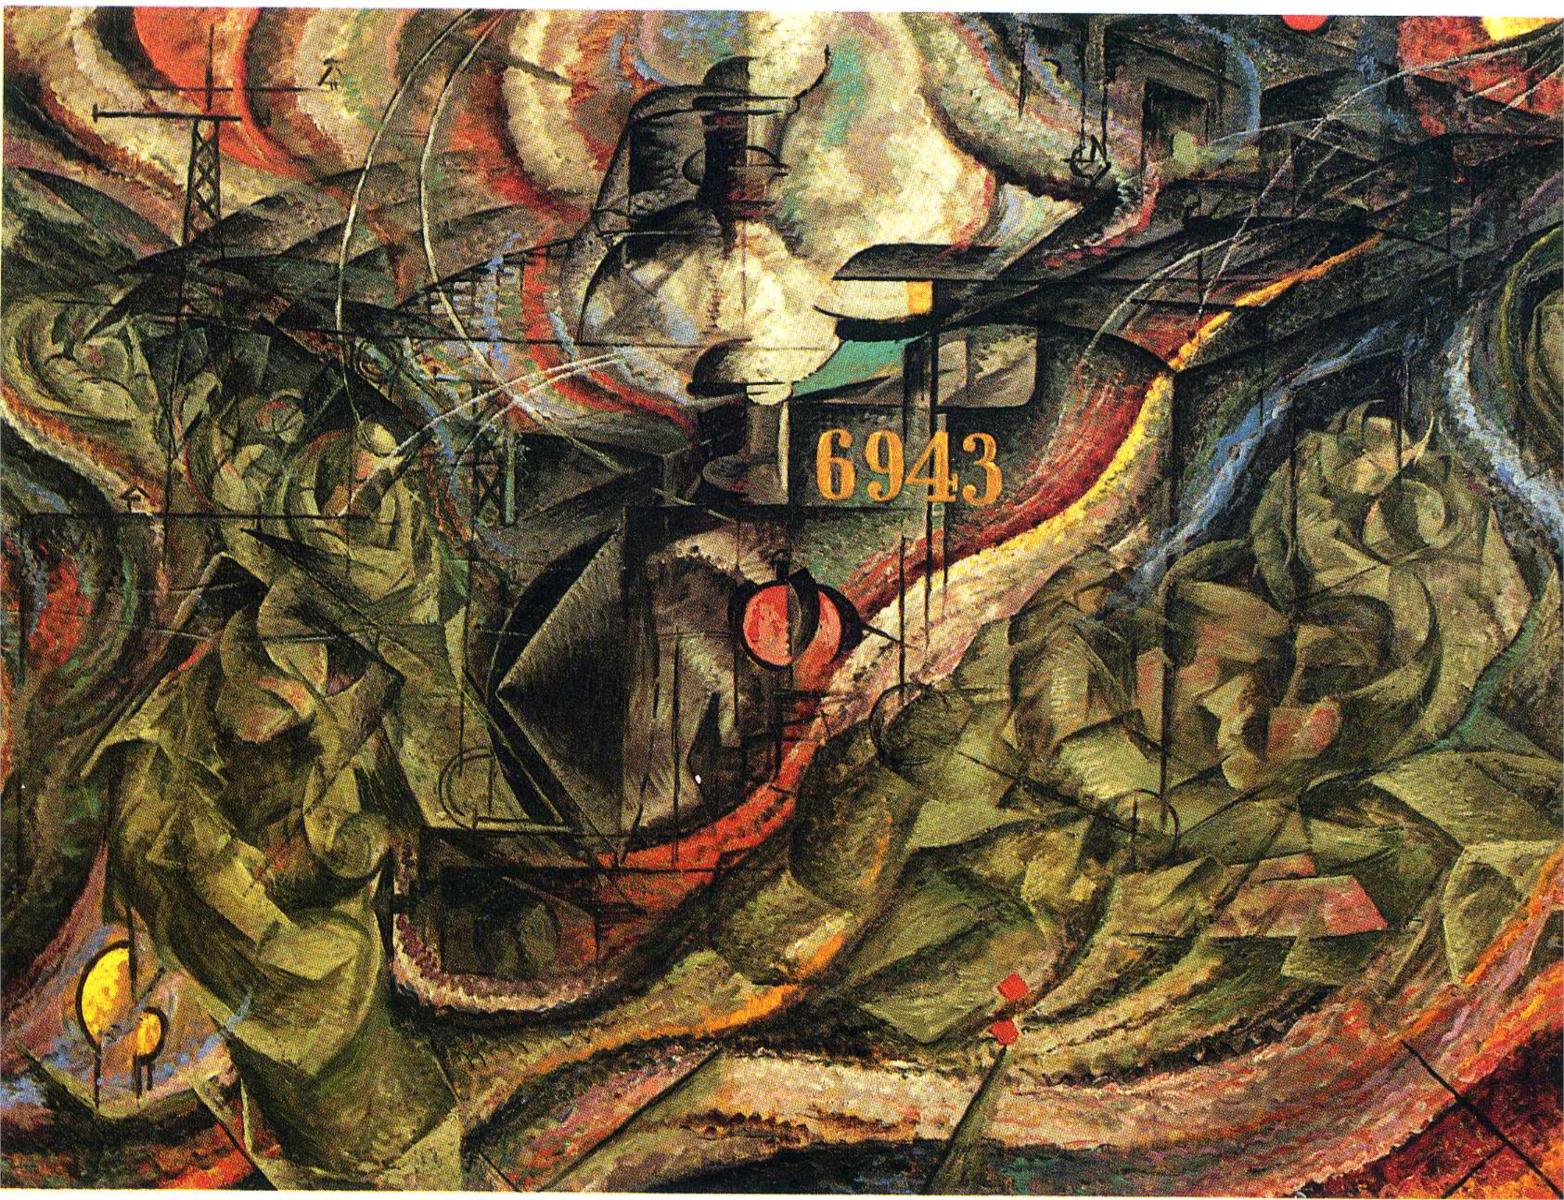 Estados de Espírito I: As Despedidas by Umberto Boccioni - 1911 - 70.5 x 96.2 cm Museum of Modern Art